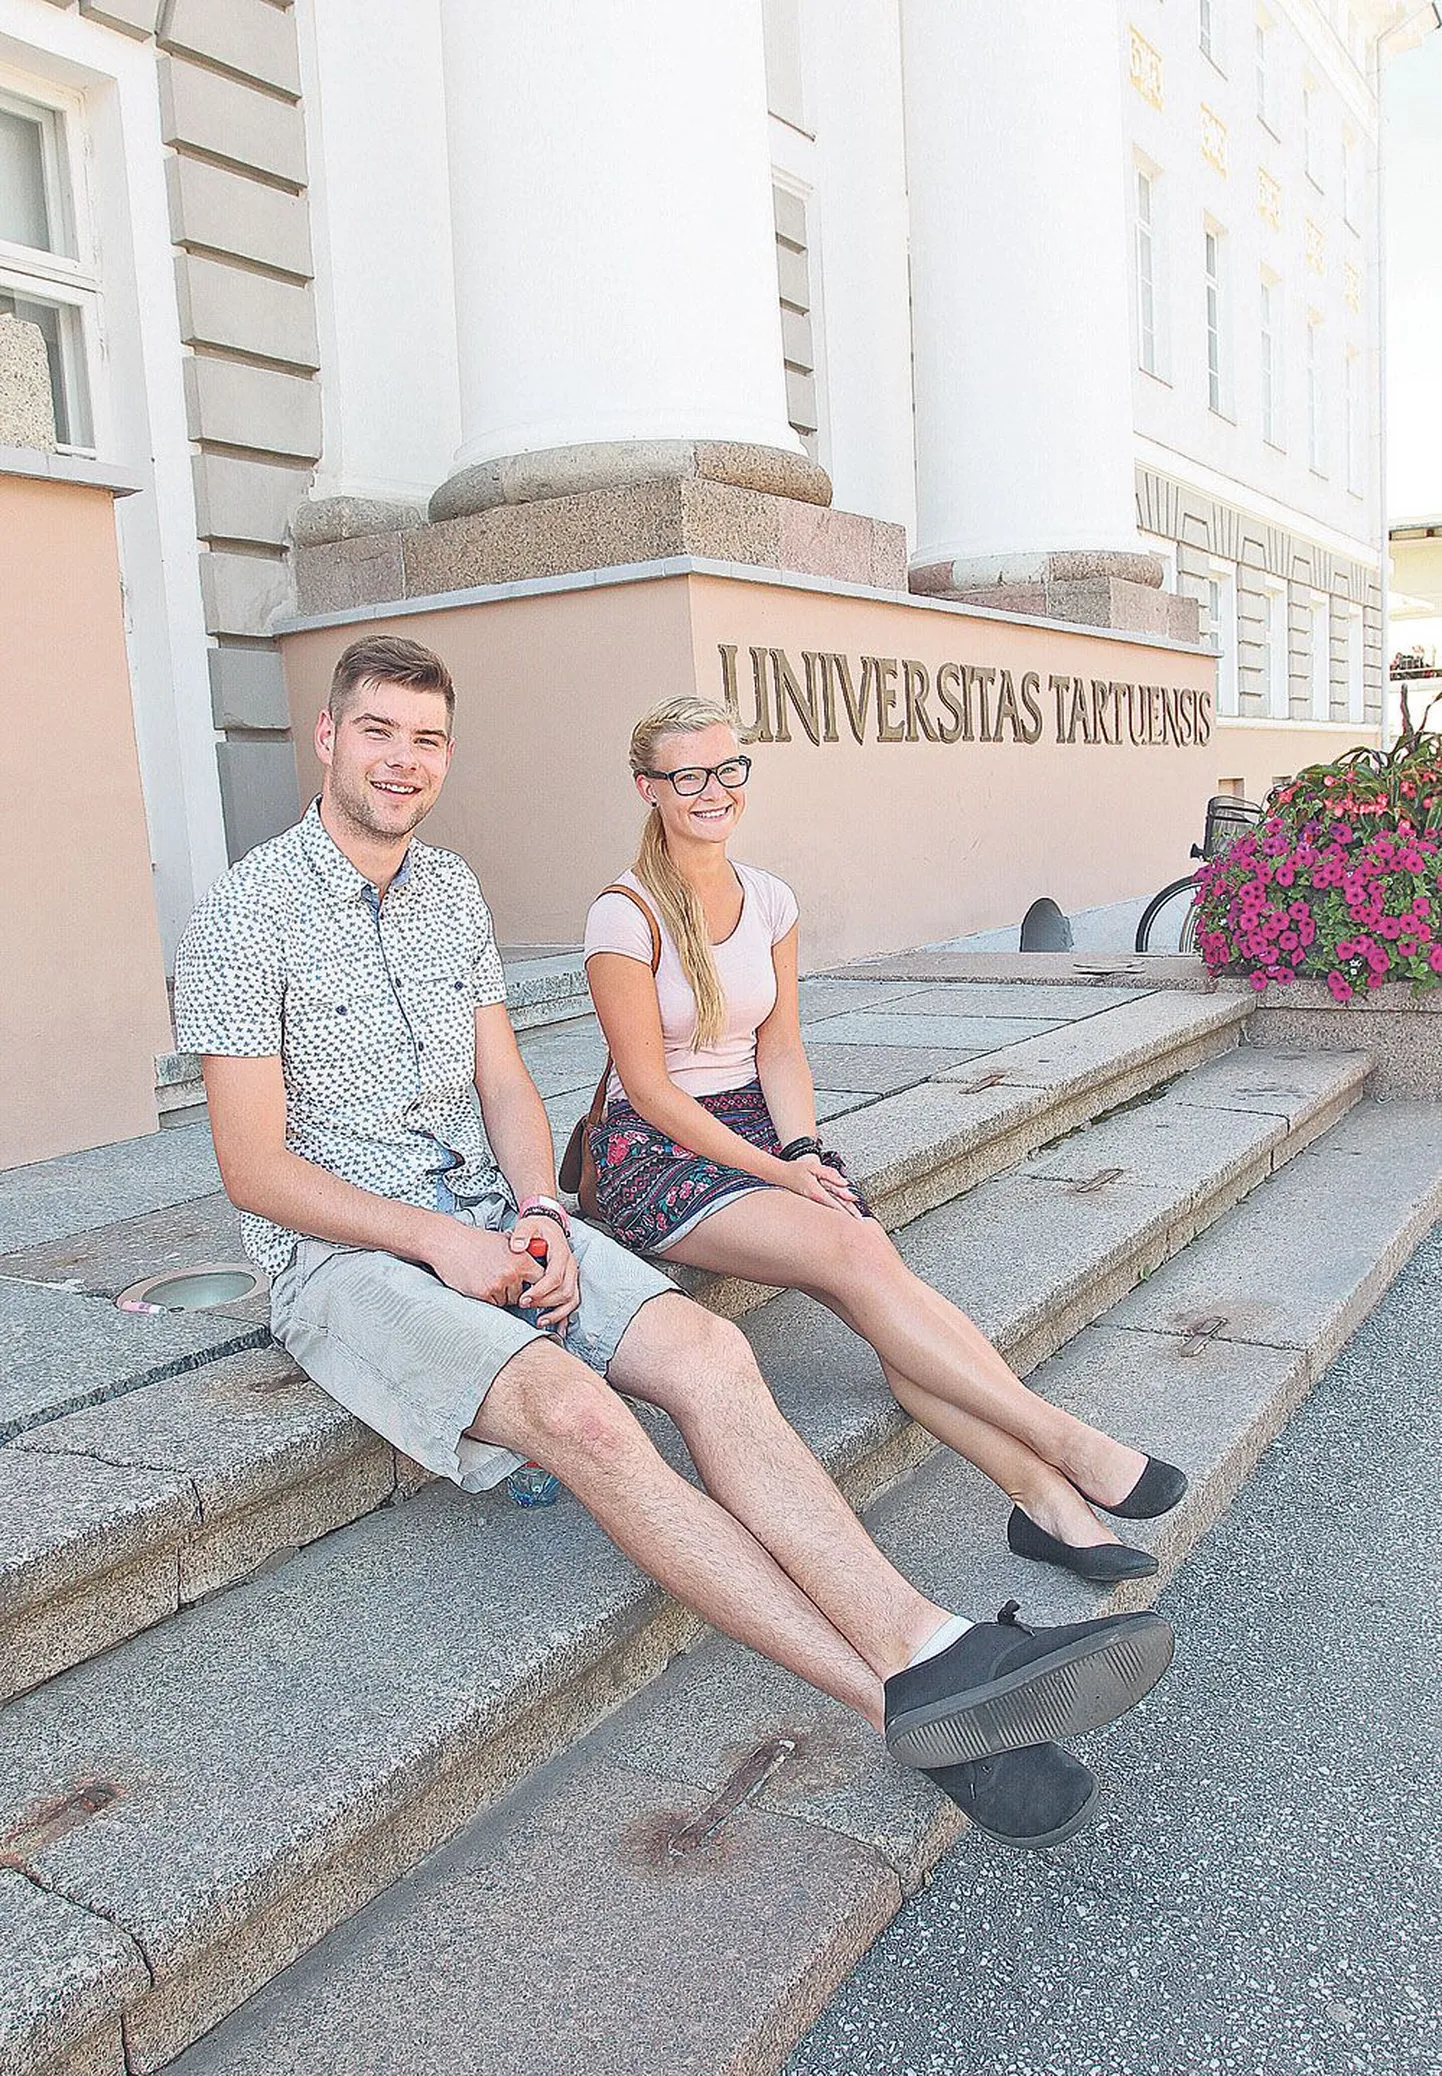 Pärnu Ülejõe gümnaasiumi lõpetanud Kristen Taavi Ilves ja Anett Padul andsid sisseastumisavalduse sisse ka pealinna ülikoolidesse, kuid kinnitasid, et esimene valik on siiski Tartu ülikool.